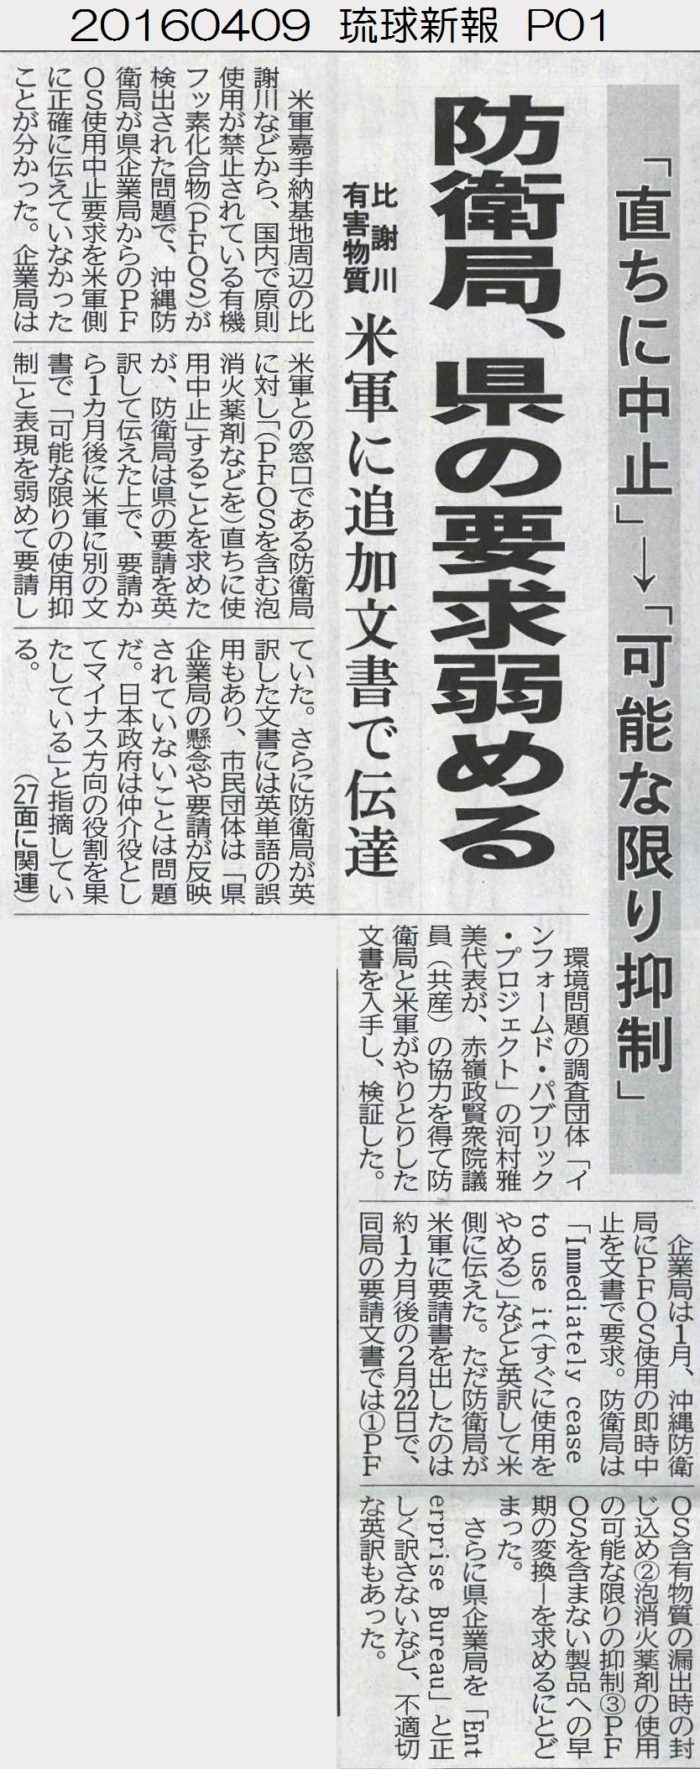 20160409 琉球新報 P01 比謝川有害物質 米軍に追加文書で伝達 防衛局県の要求弱める